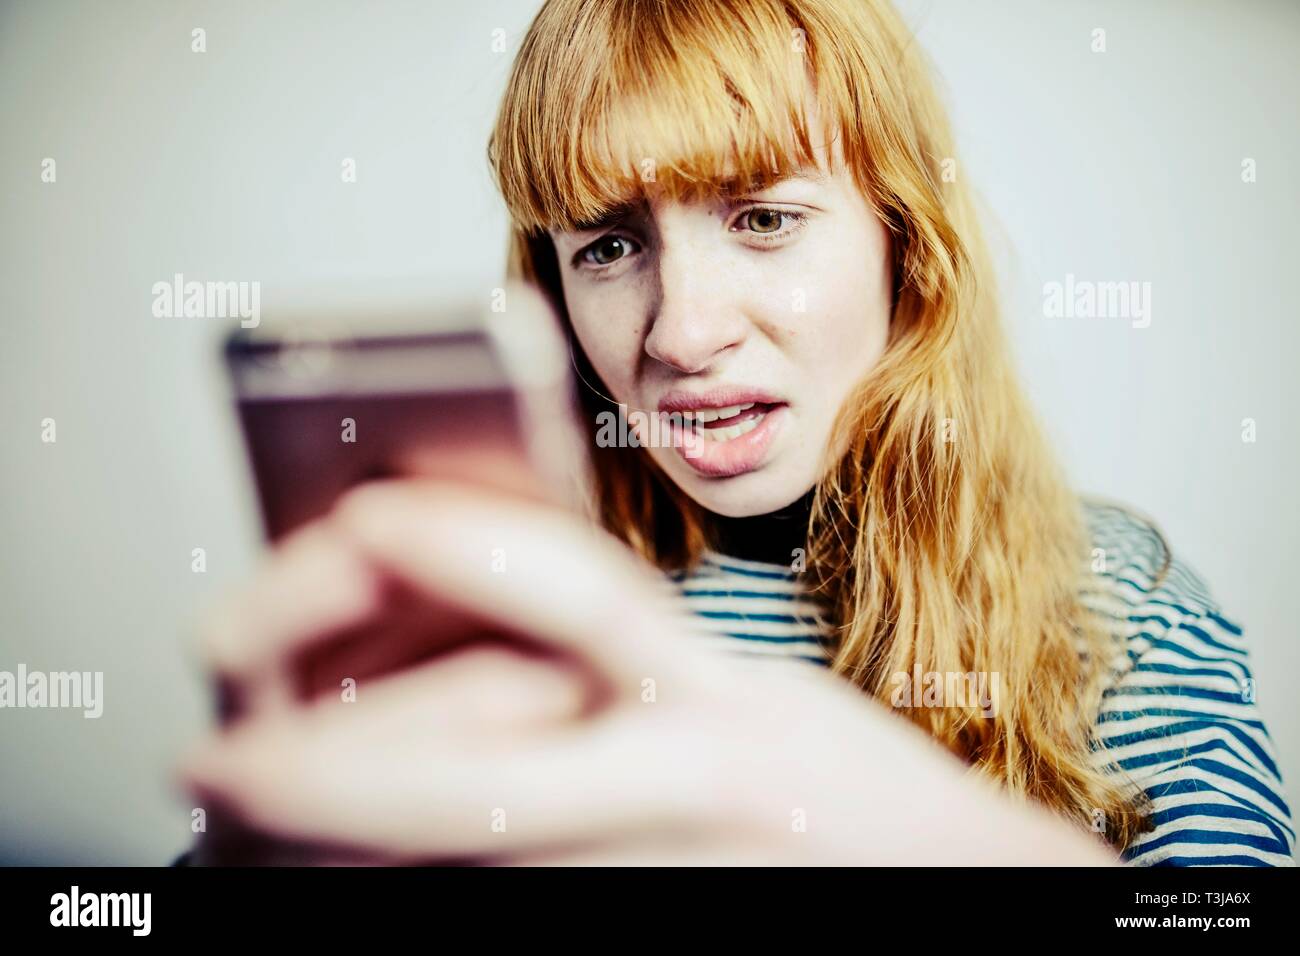 Niña, adolescente, pelirrojo, mira horrorizado en su smartphone, Foto de estudio, Alemania Foto de stock